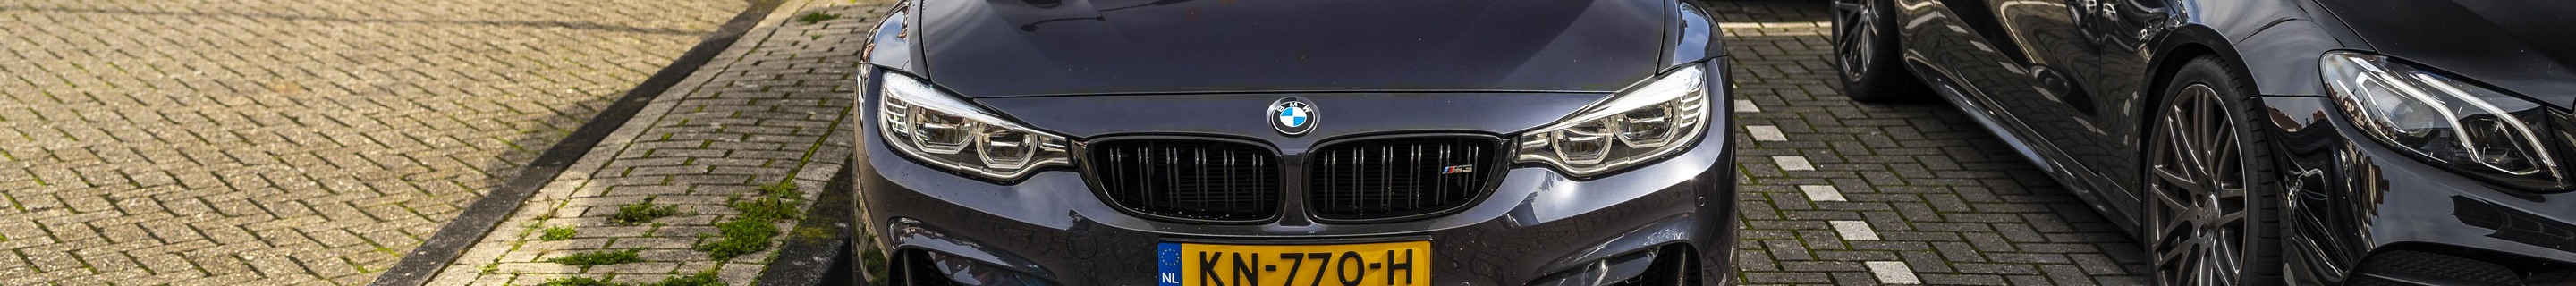 BMW M3 F80 Sedan 30 Jahre Edition